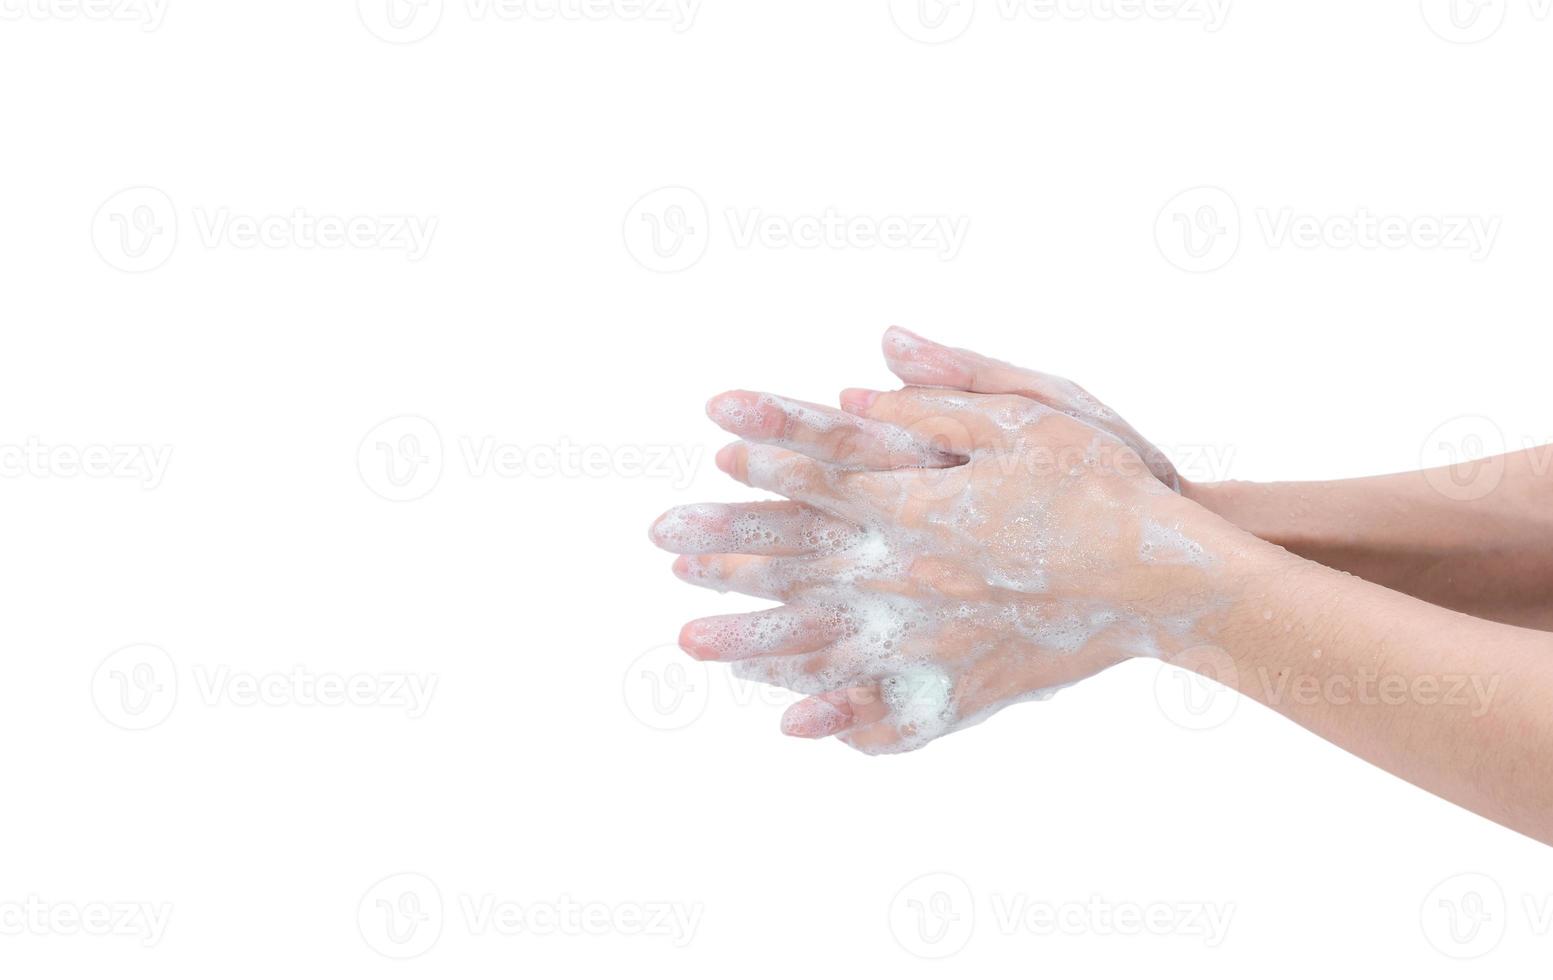 Frau wäscht sich die Hand mit Seifenschaum und Wasser. handreinigung für eine gute persönliche hygiene zur vorbeugung von coronavirus oder grippeepidemie. verfahren der handwäsche zur abtötung von keimen, viren, bakterien. Reinigung schmutziger Hände. foto